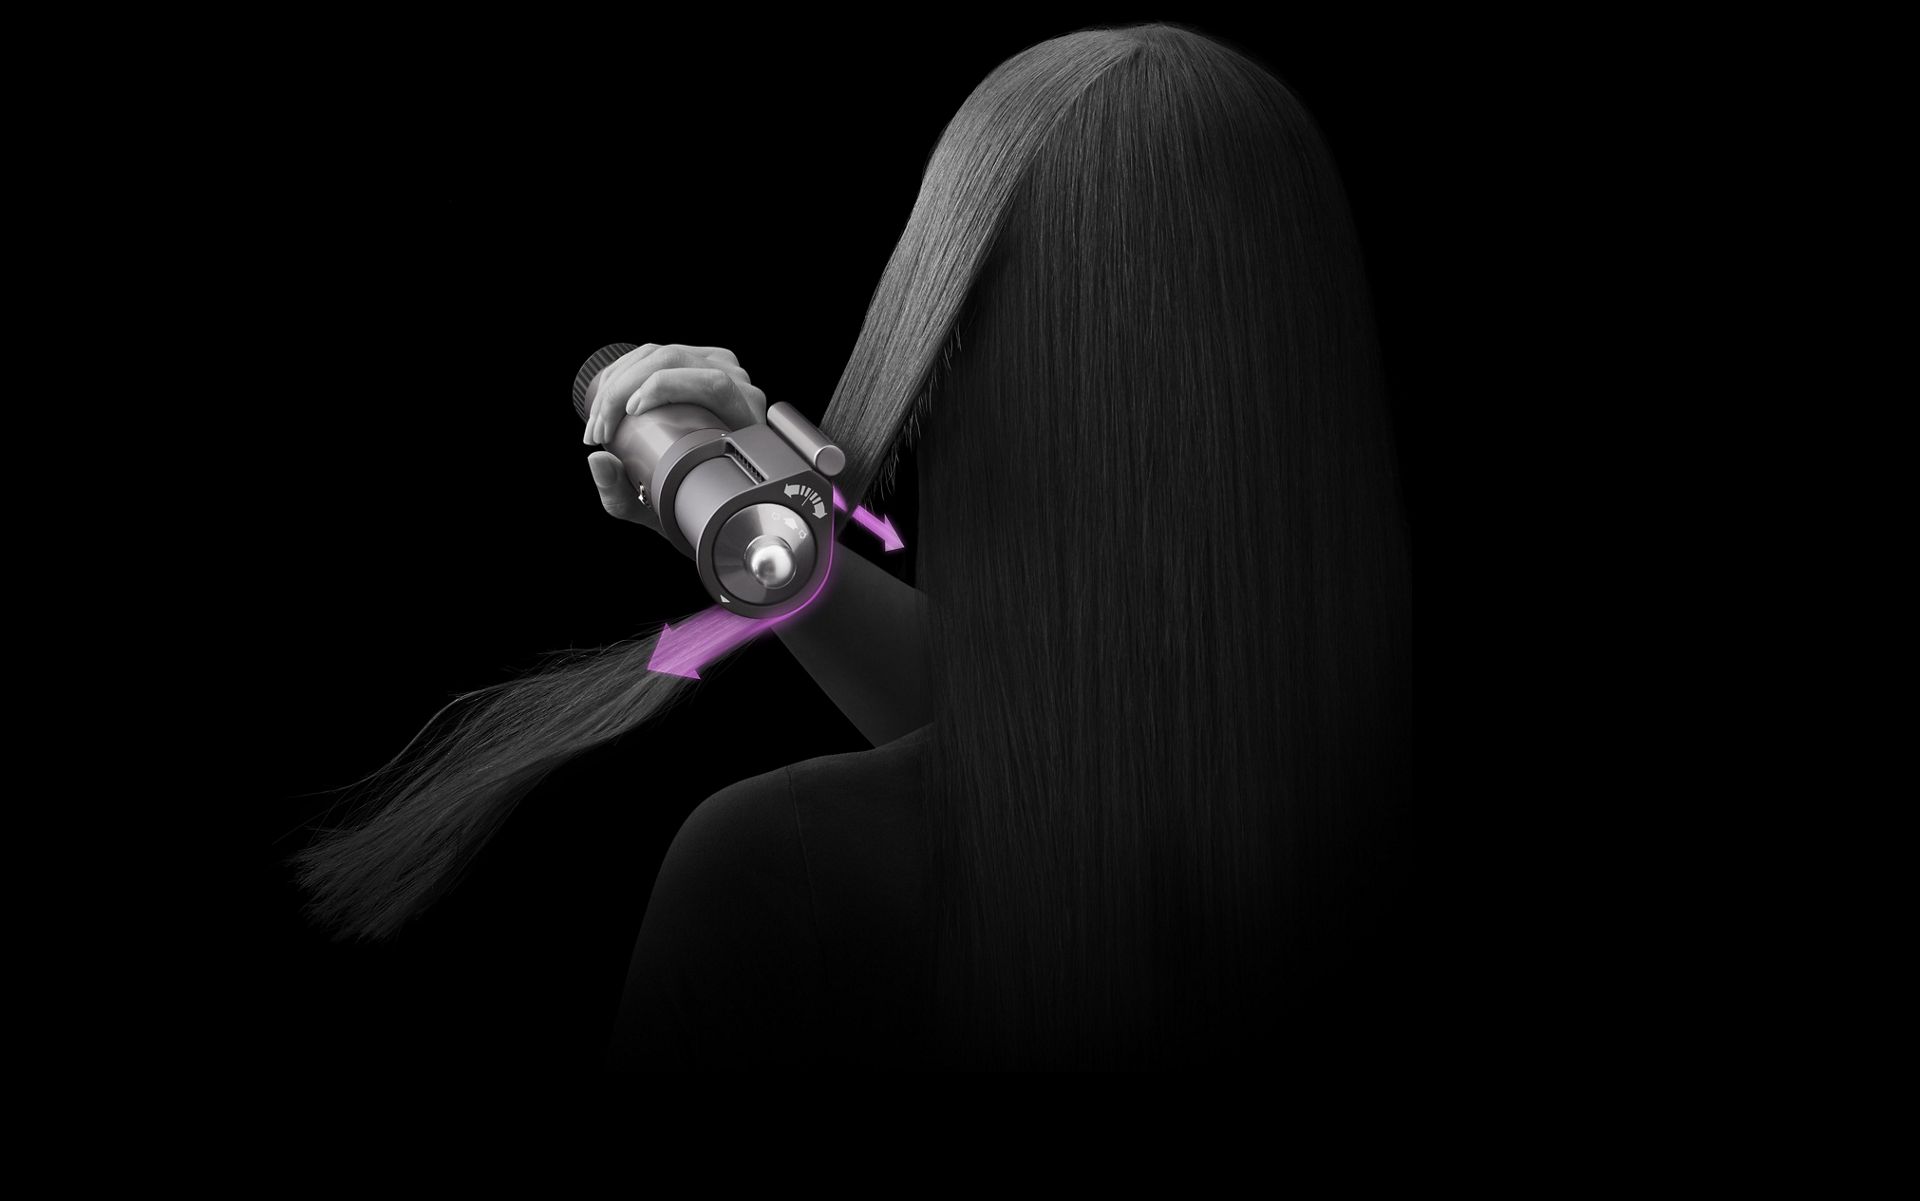 דוגמנית משתמשת באביזר ייבוש השיער קואנדה במצב החלקה